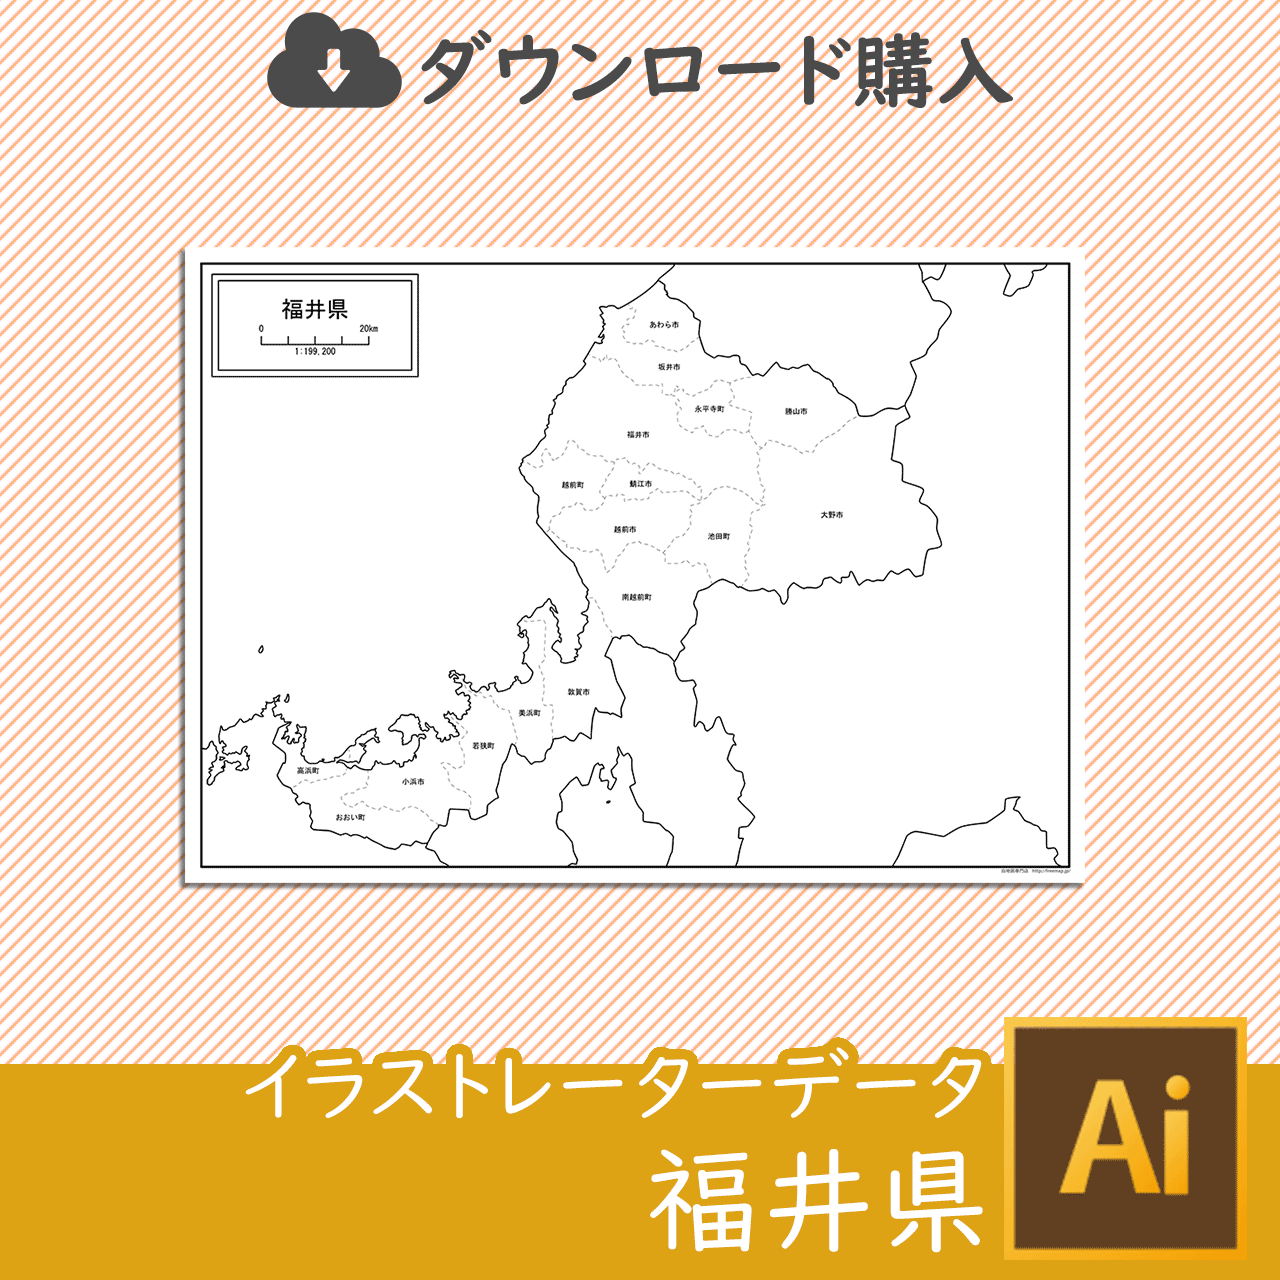 福井県のaiデータのサムネイル画像